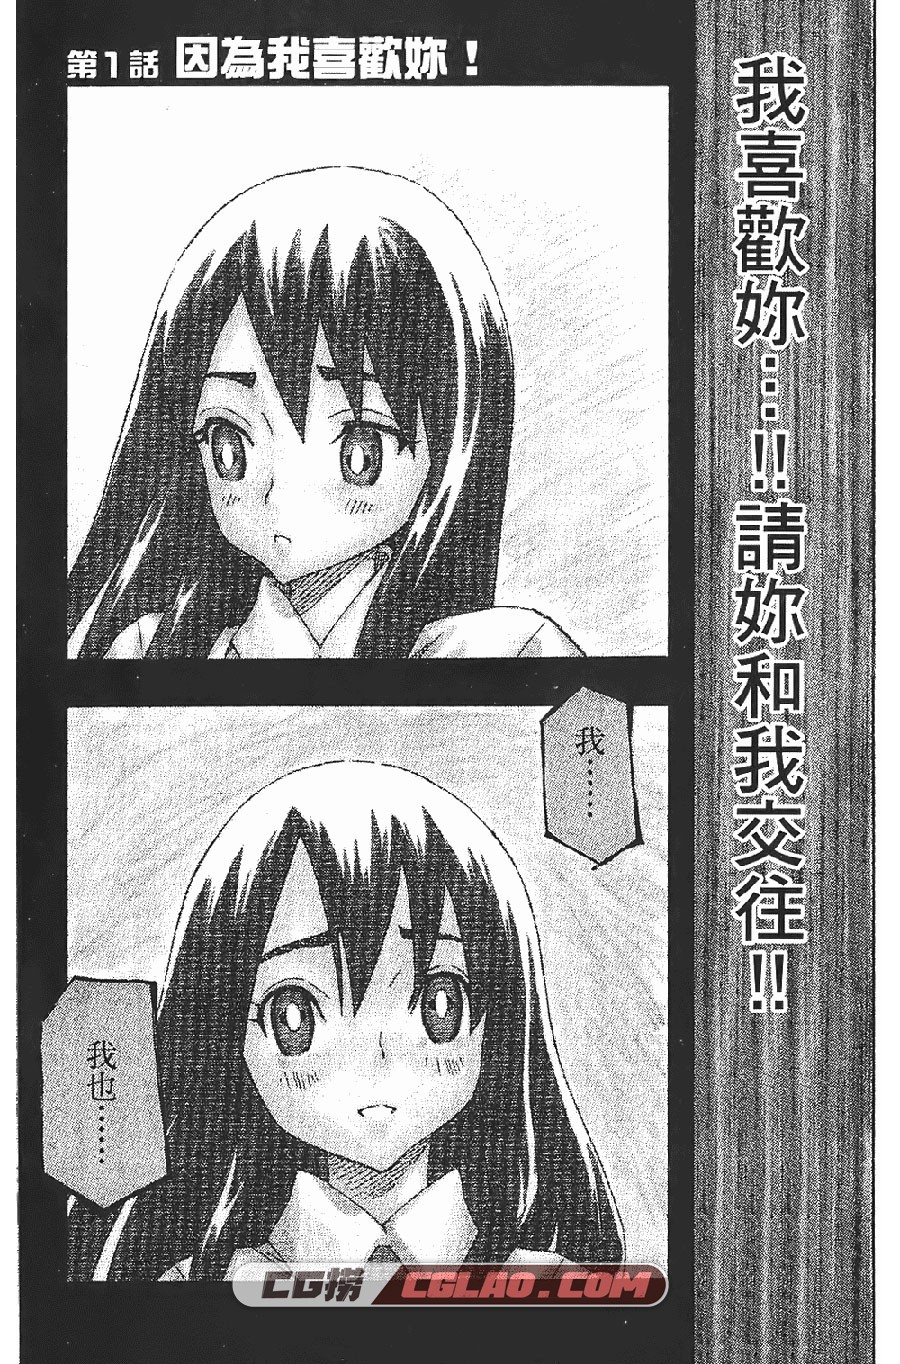 恋爱战队 森泰士 1-6卷 漫画完结全集下载 百度云下载,Rangeman002.jpg